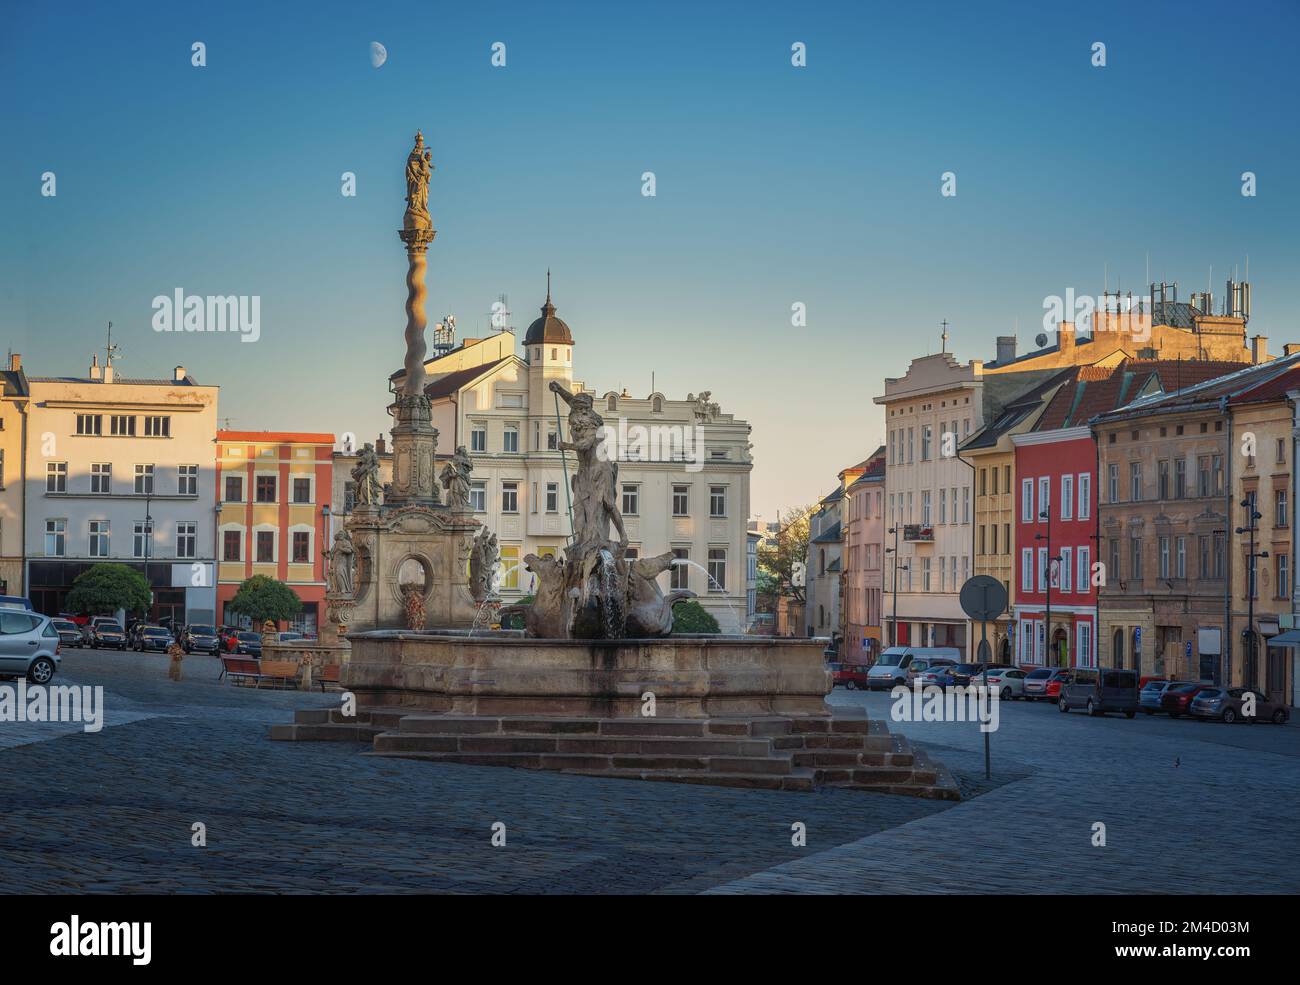 Place inférieure avec fontaine Neptune et colonne Marian Plague - Olomouc, République tchèque Banque D'Images